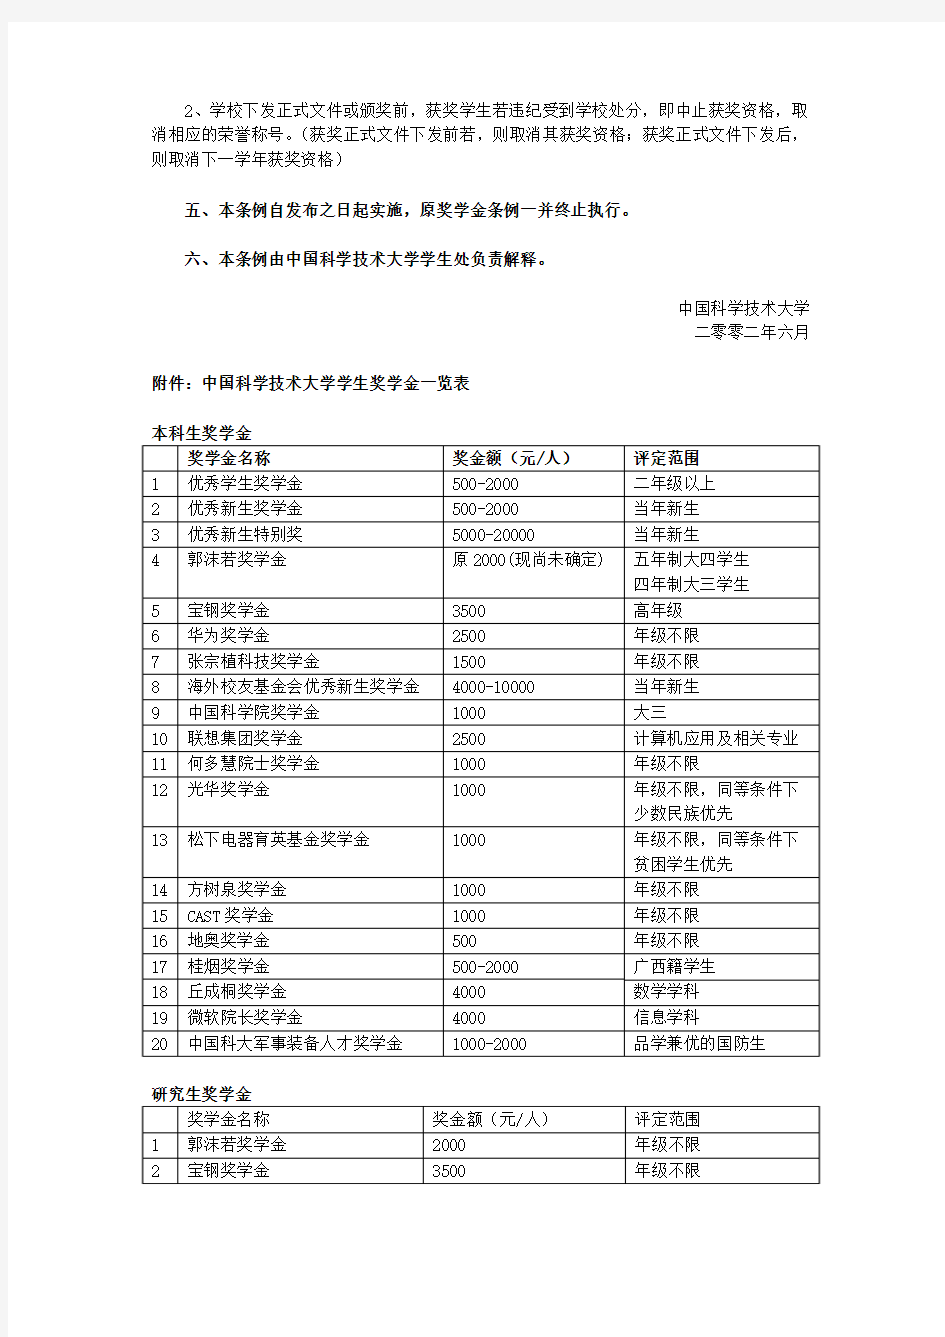 中国科技大学学生奖学金评定办法(试行)